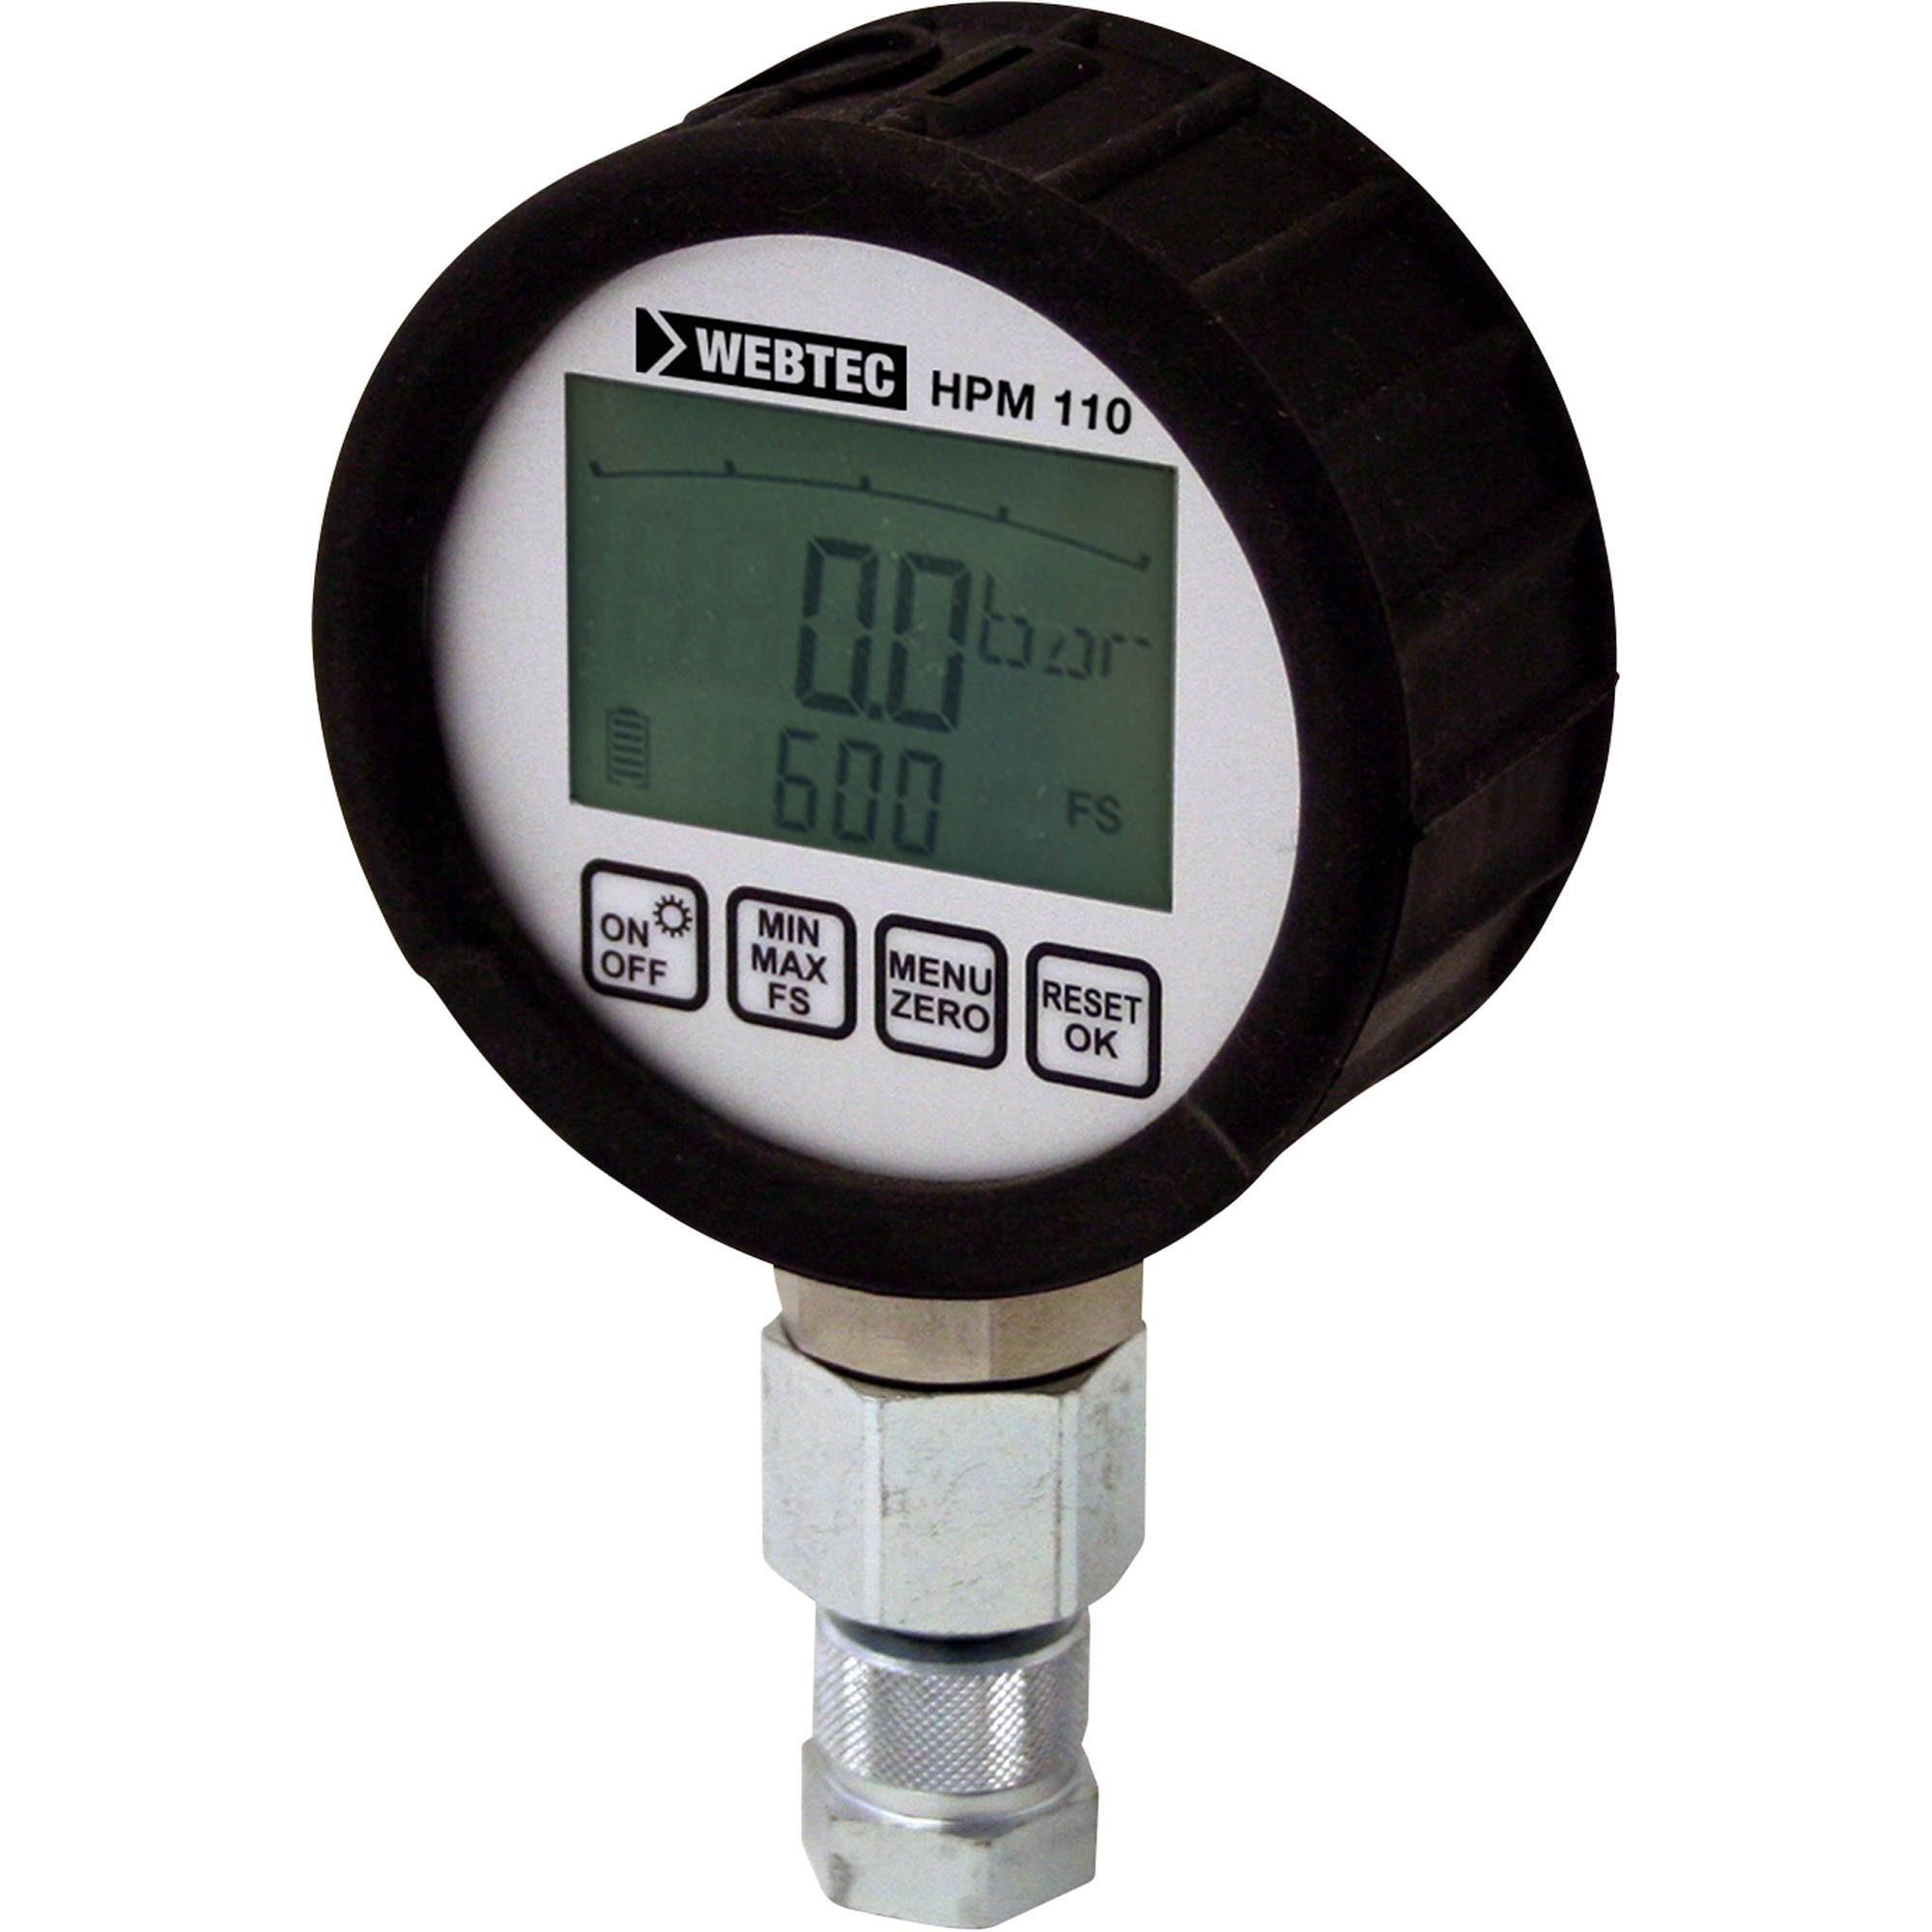 Webtec Digital Pressure Gauge, 8700 Max. PSI, 3.5Inch Diameter, Model SR-HPM-110-UN-8700